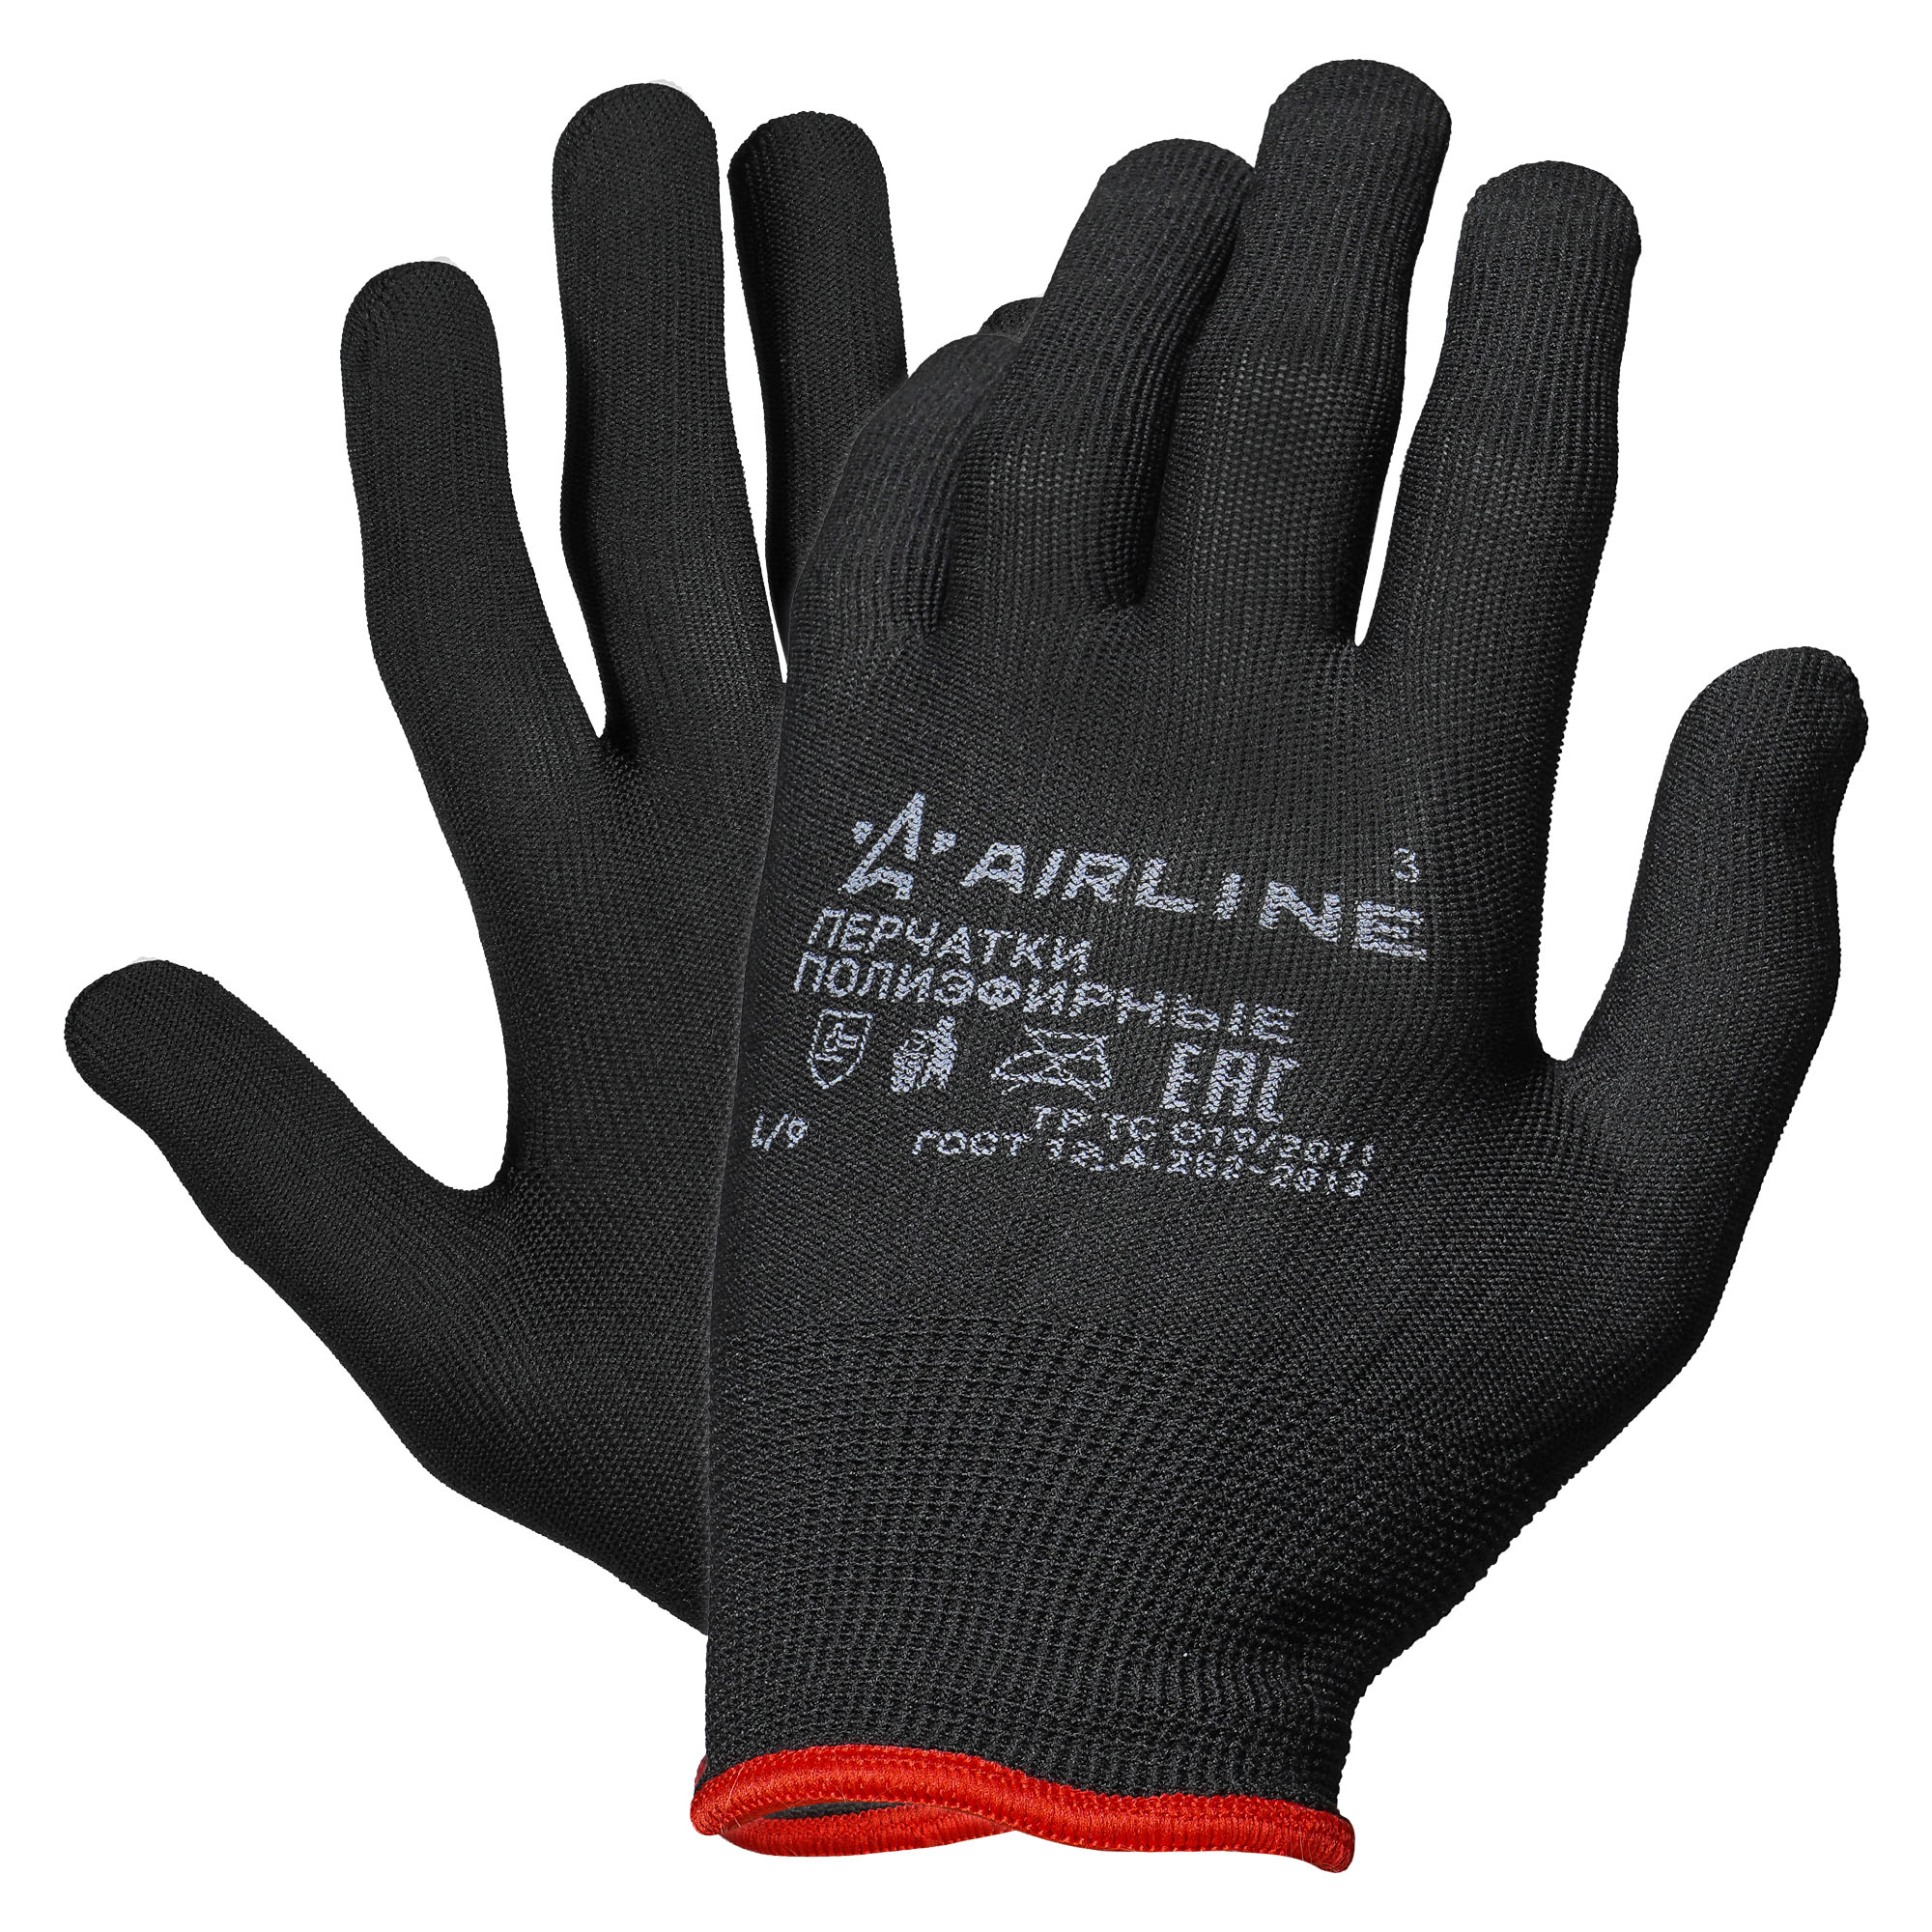 Перчатки Полиэфирные С Подвесом (L) Черные (Adwg006) Airline Adwg006 AIRLINE арт. ADWG006 пемза для педикюра с подвесом 8 5 × 4 5 см разно ная